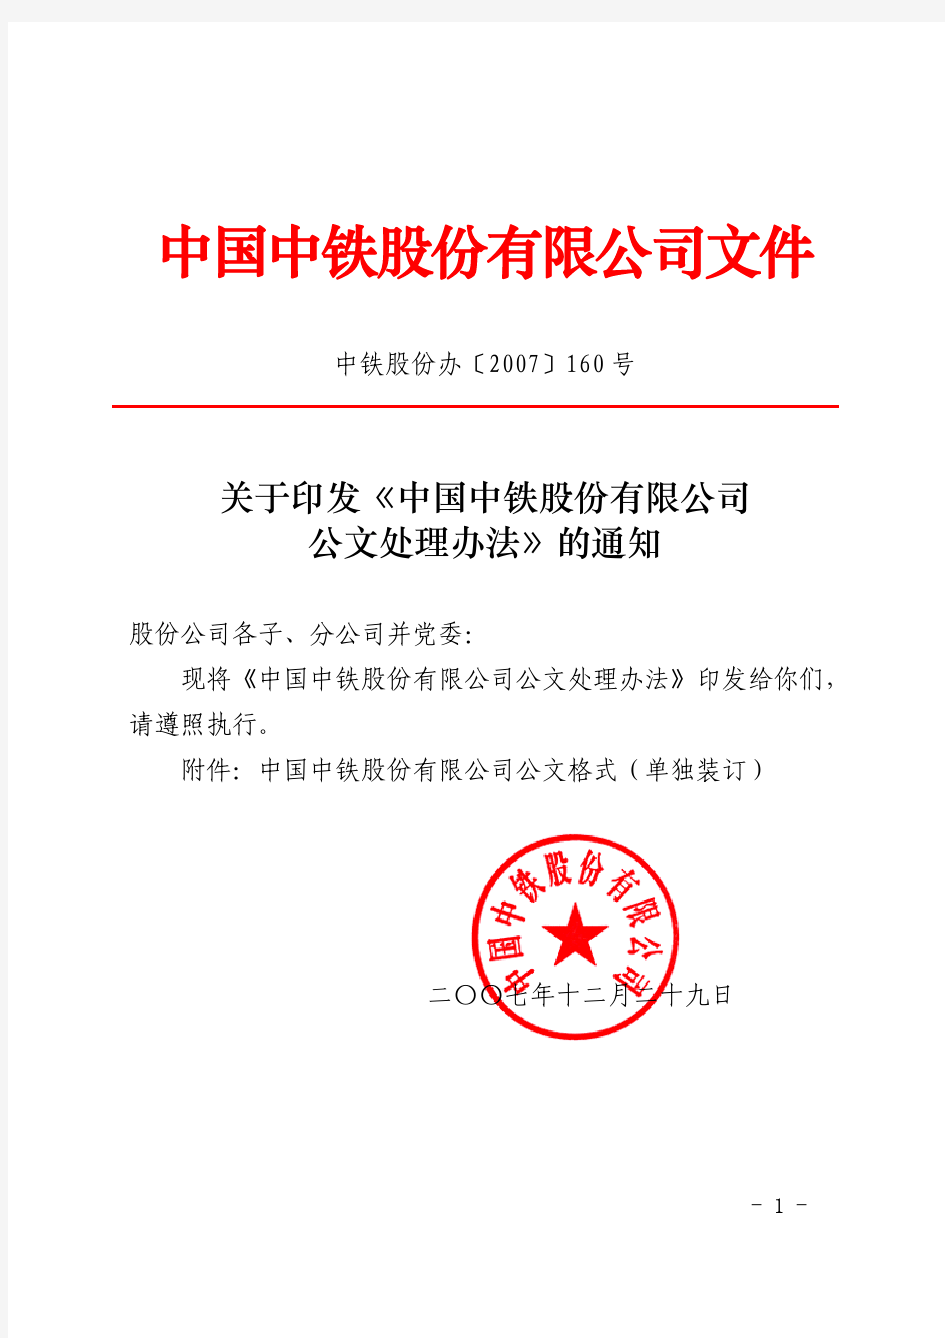 中国中铁    关于印发《中国中铁股份有限公司公文处理办法》的通知